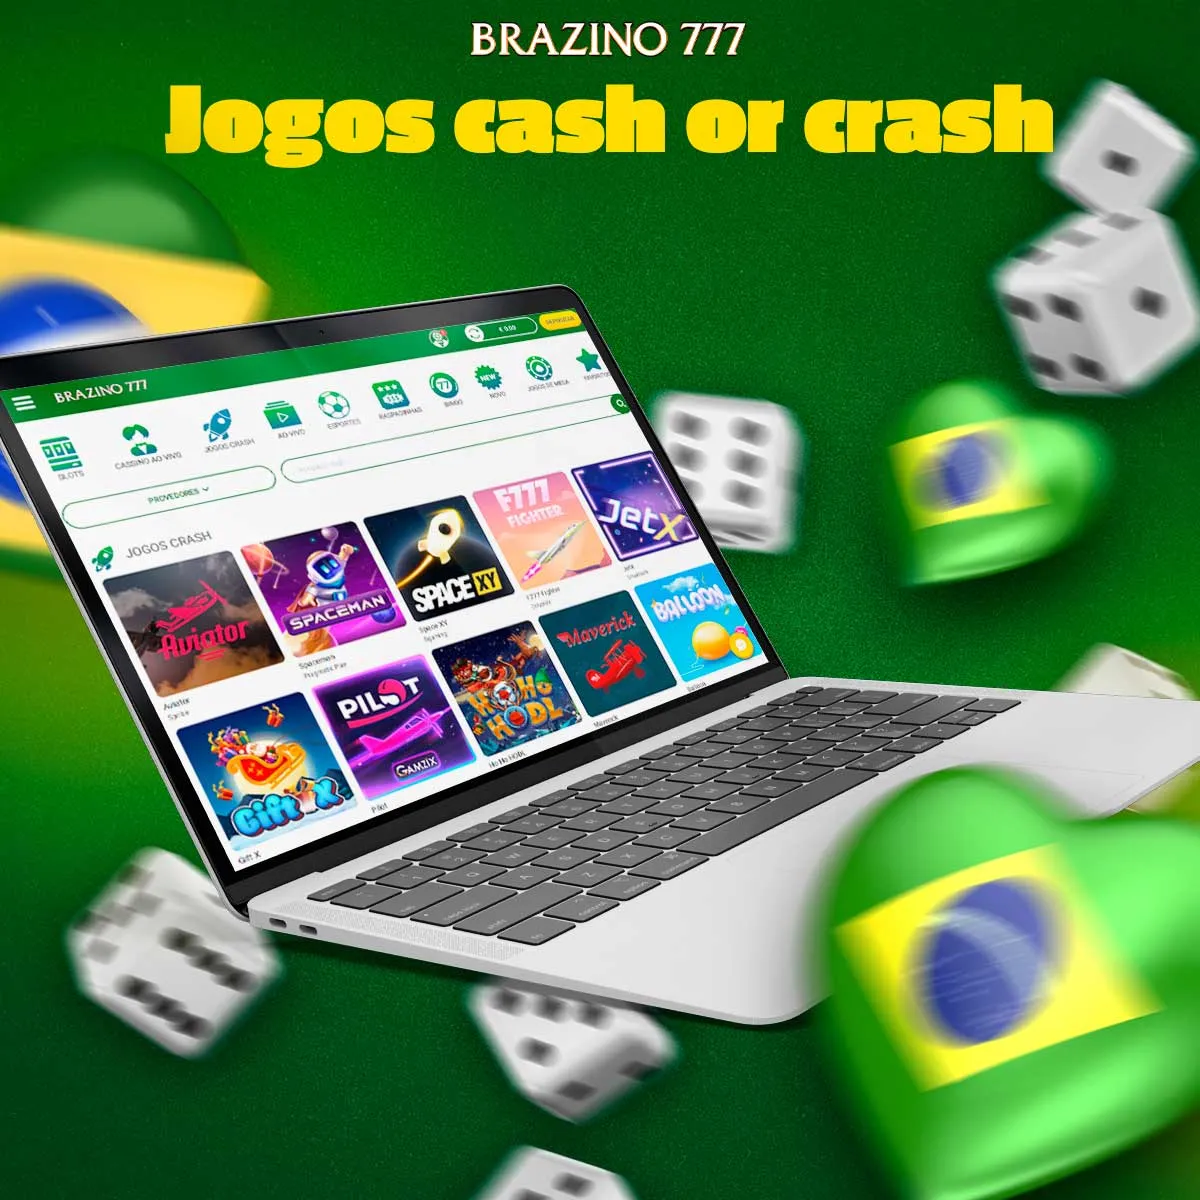 Cash or crash Brazino777